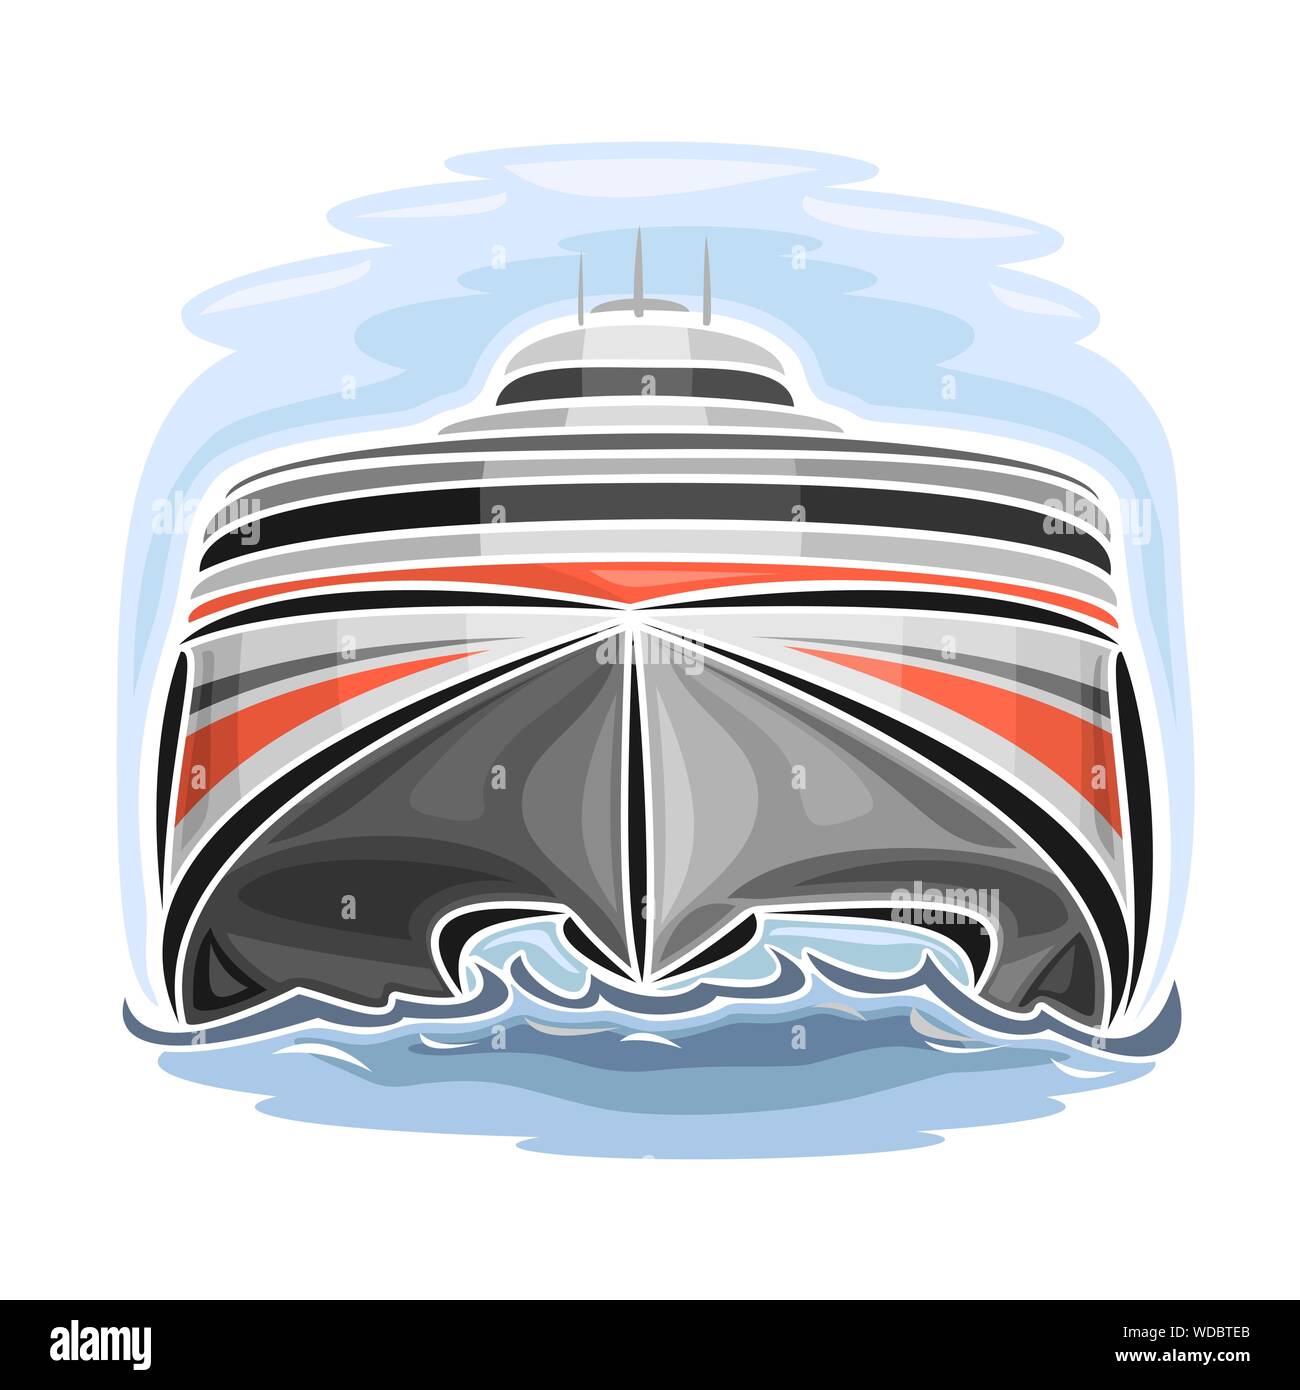 Vector Abbildung: Logo für High-speed car ferry Catamaran, Vorderansicht. Stock Vektor